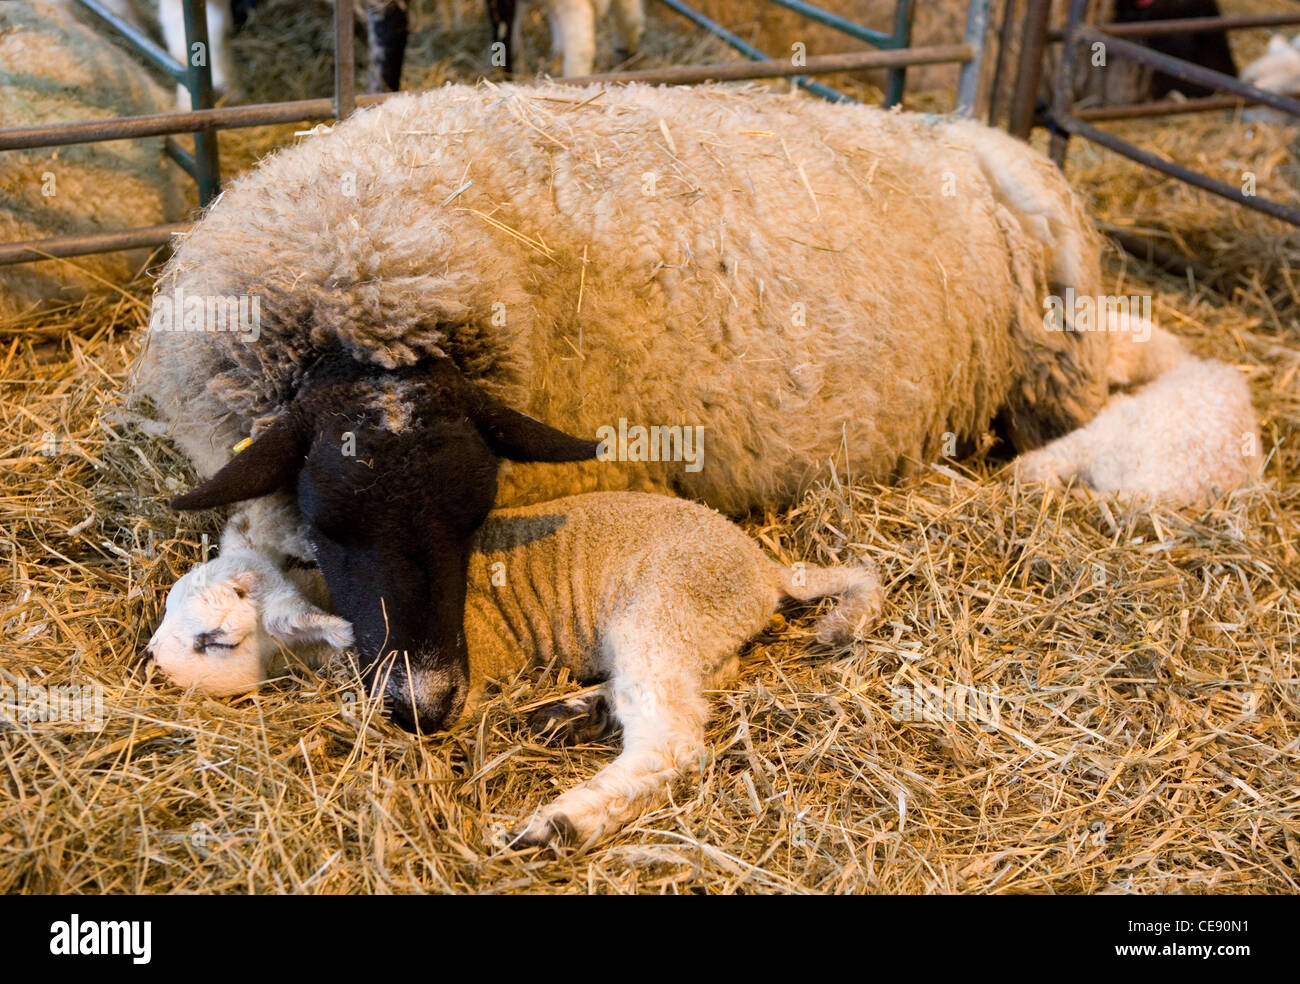 Sheep Single lamb sleeping with parent UK Stock Photo